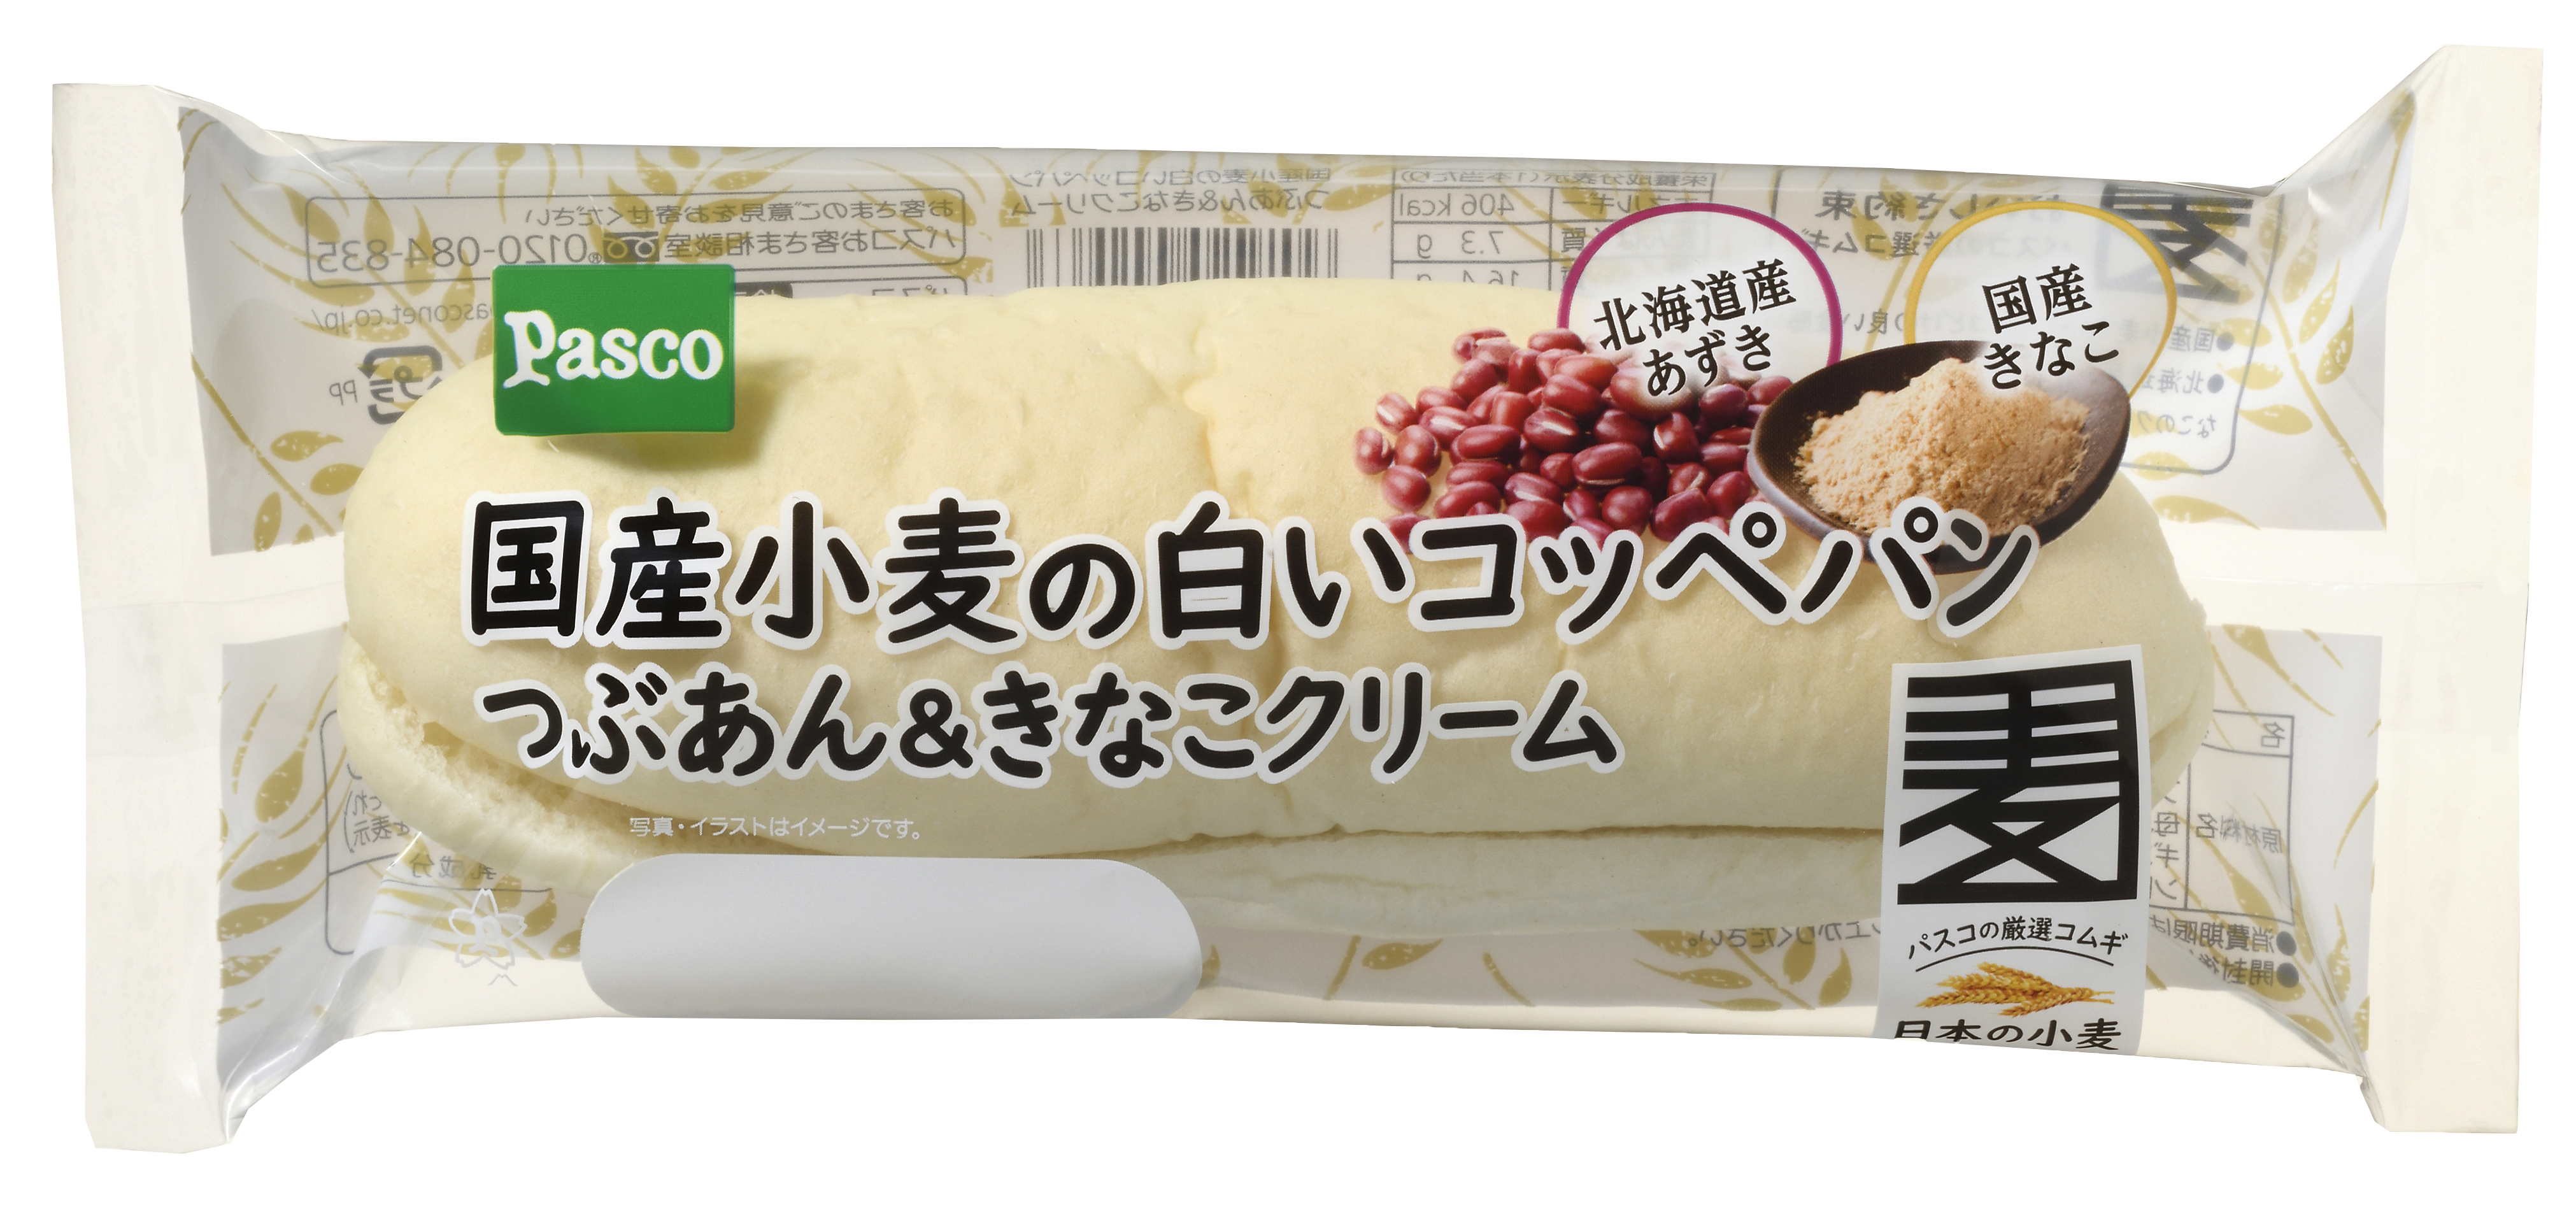 国産小麦シリーズの新商品 国産小麦の白いコッペパン つぶあん きなこクリーム 敷島製パン株式会社のプレスリリース